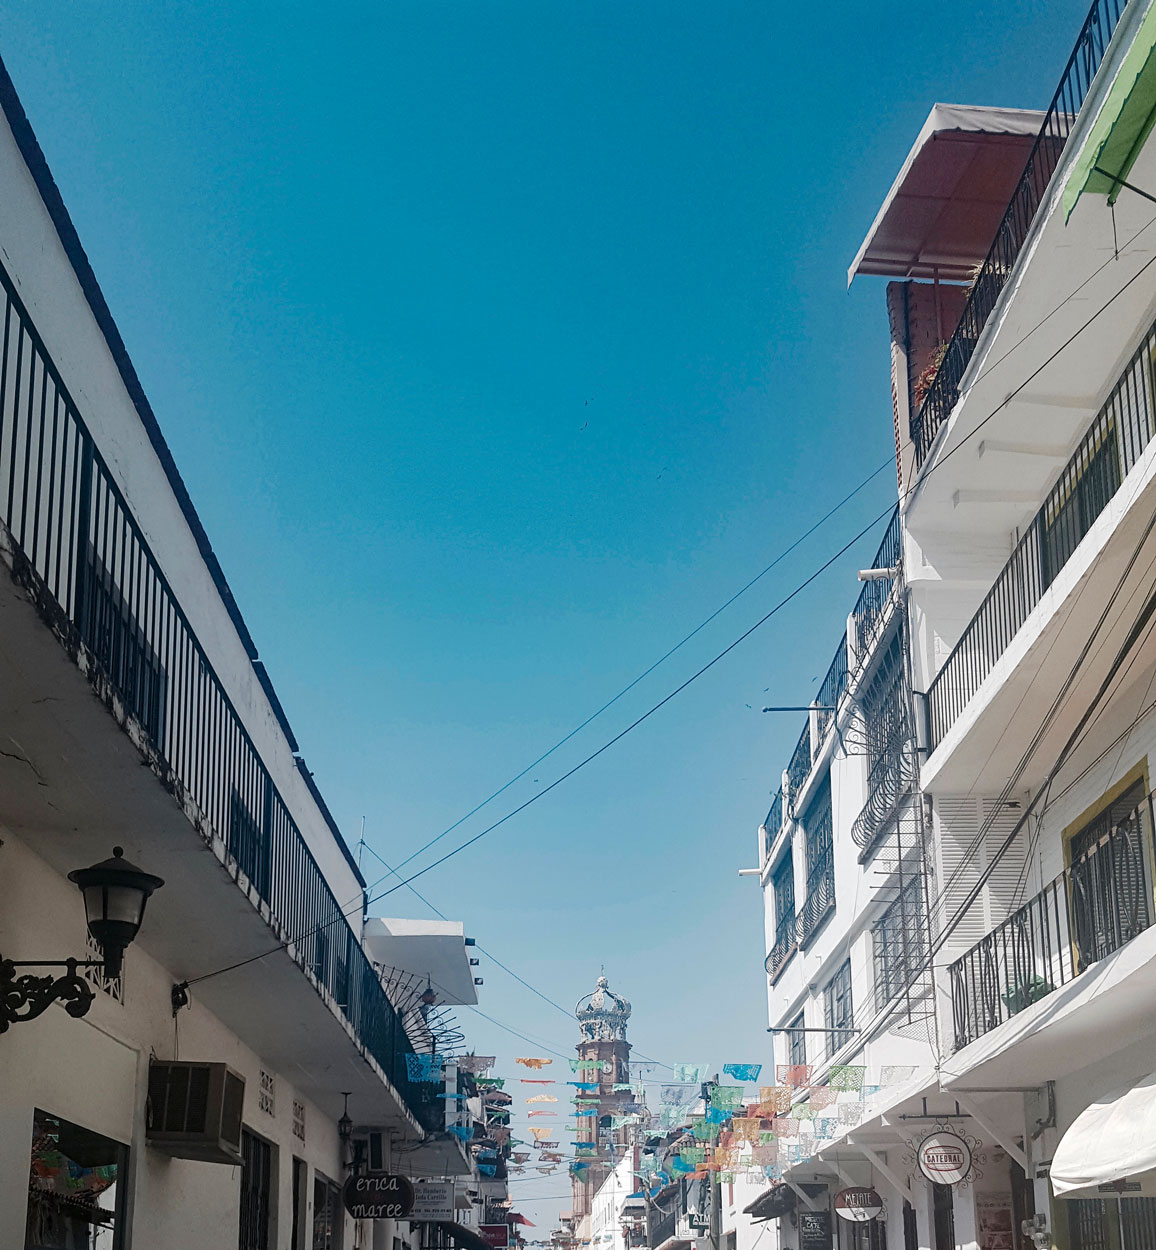 papel picado flags in Puerto Vallarta 